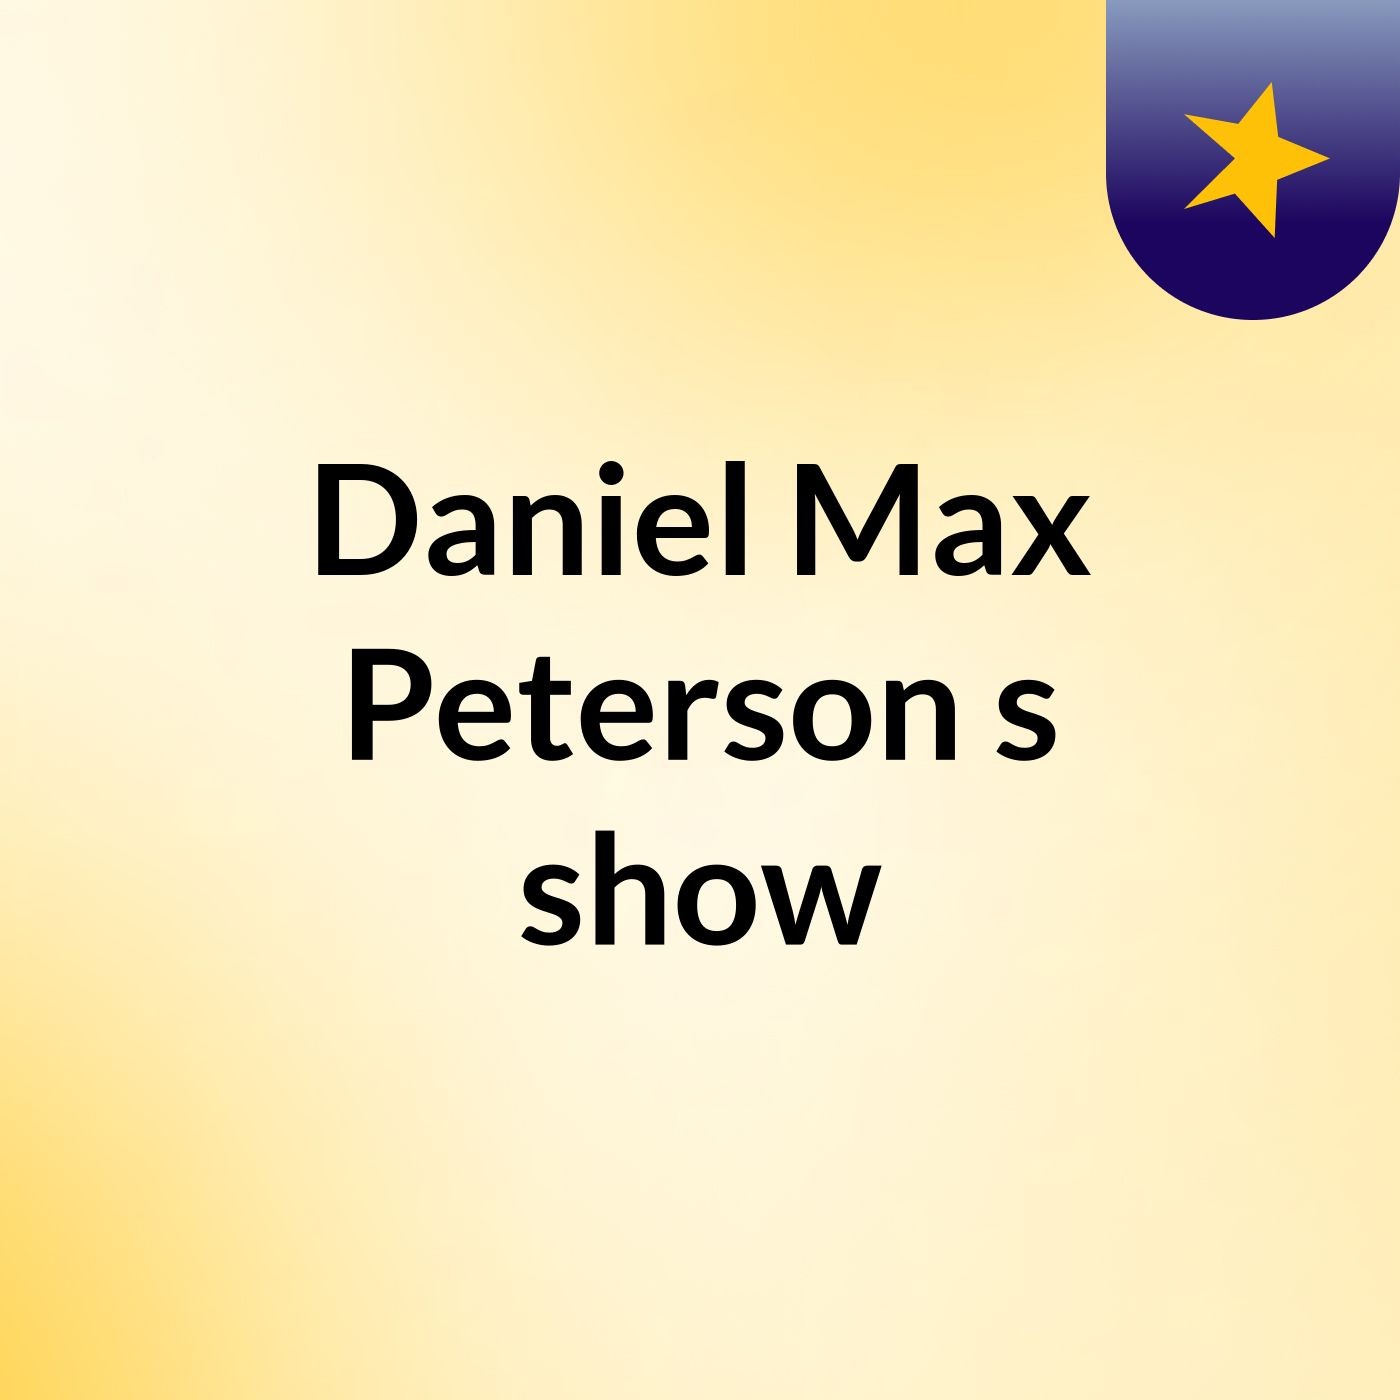 Daniel Max Peterson's show